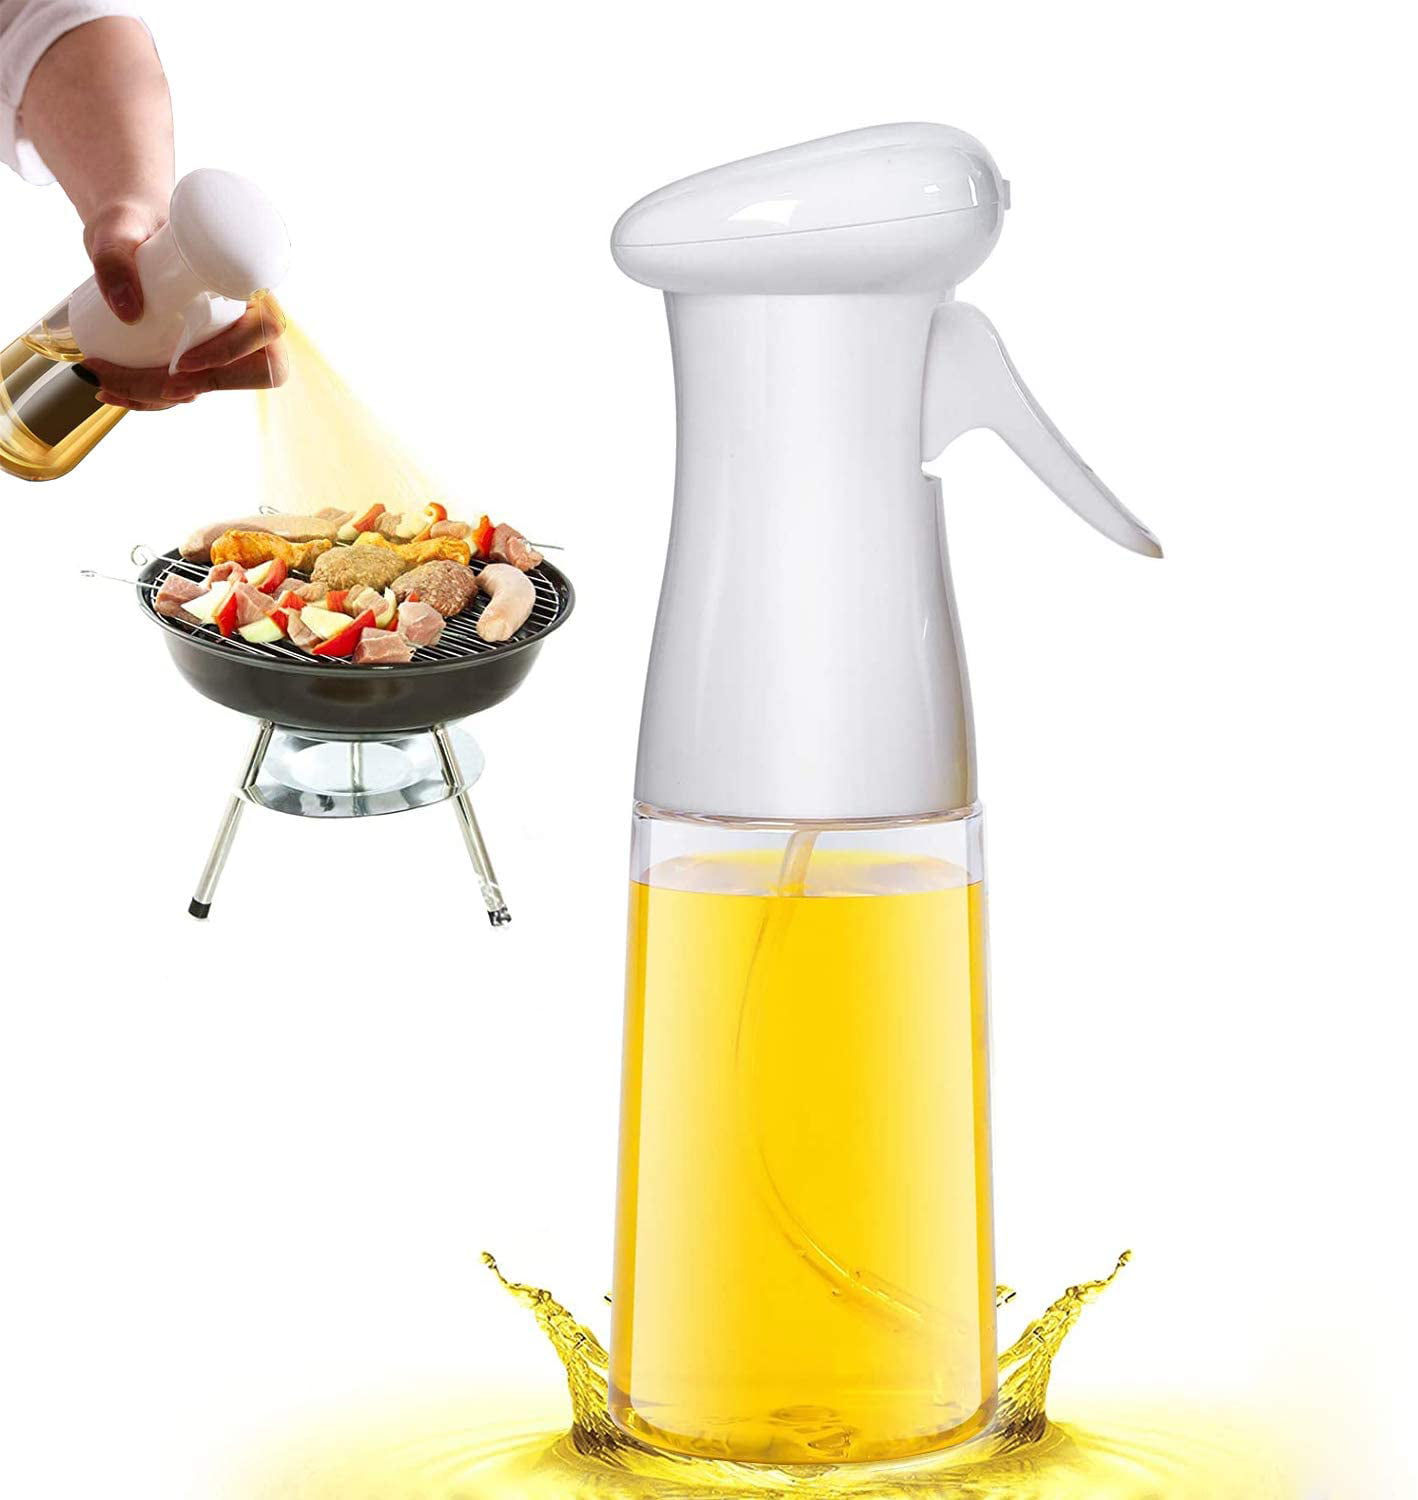 Olive Oil Sprayer For Cooking，Oil Sprayer Mister for Air Fryer Oil Vinegar Spray Bottle Dispenser For Kitchen BBQ/Grilling/Roasting/Grilling/baking